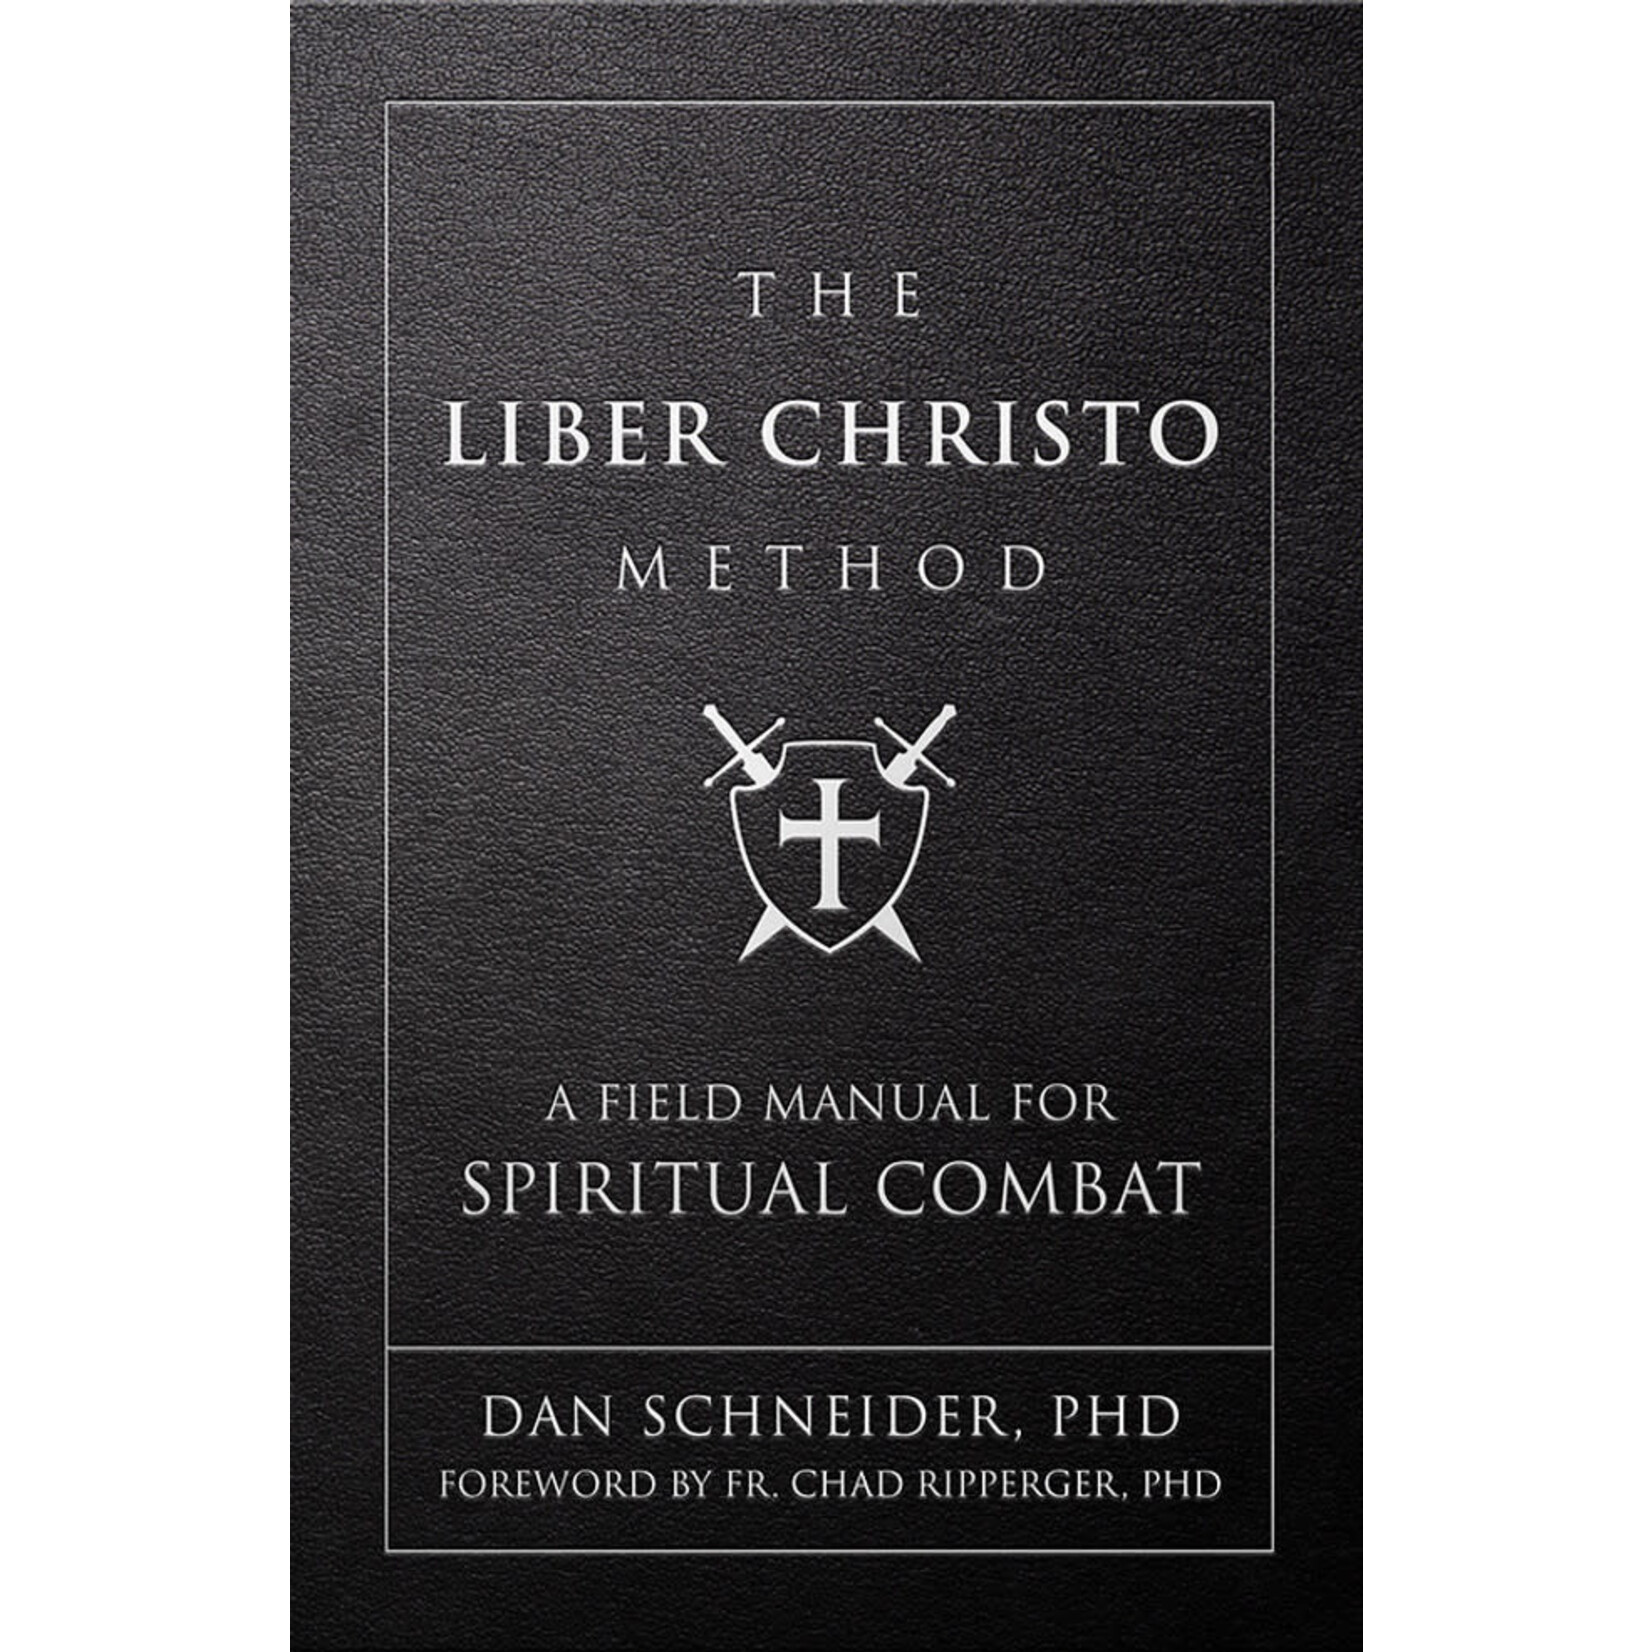 The Liber Christo Method